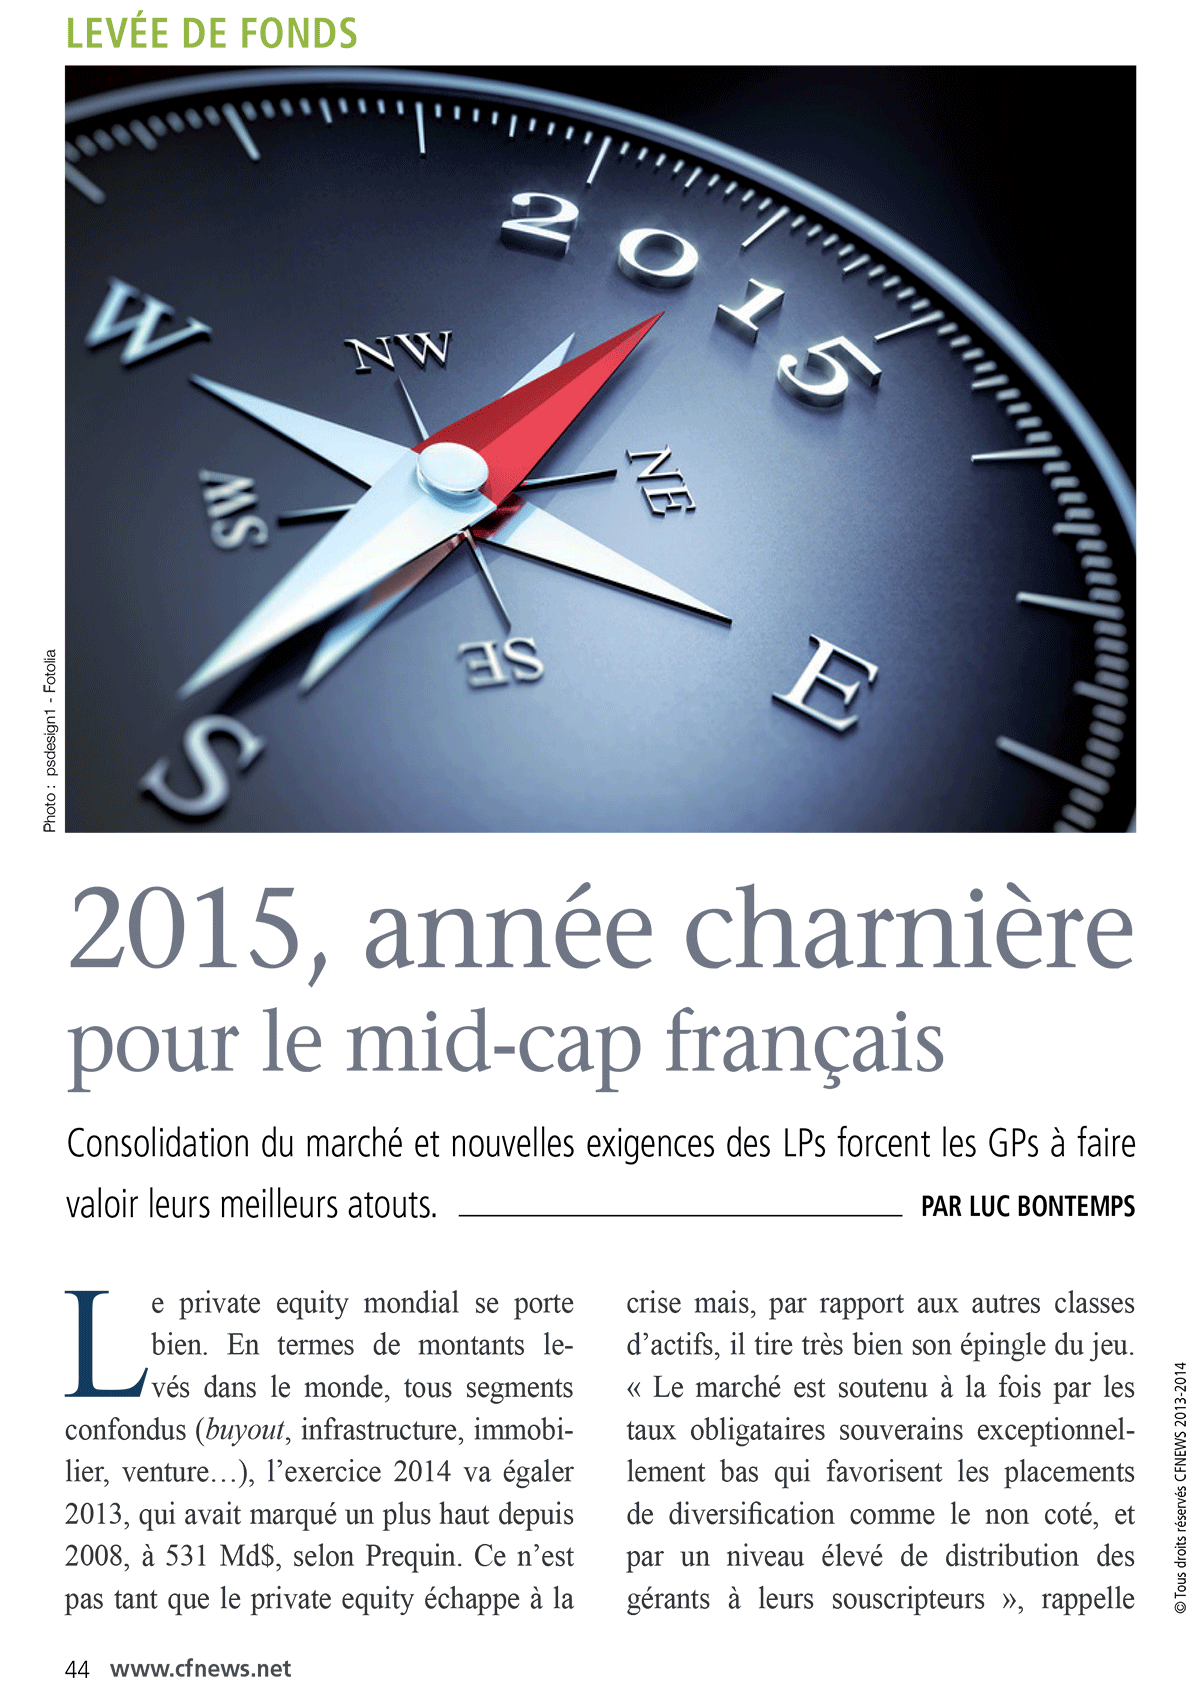 fev2015-2015_annee_charniere_pour_le_mid_cap_francais